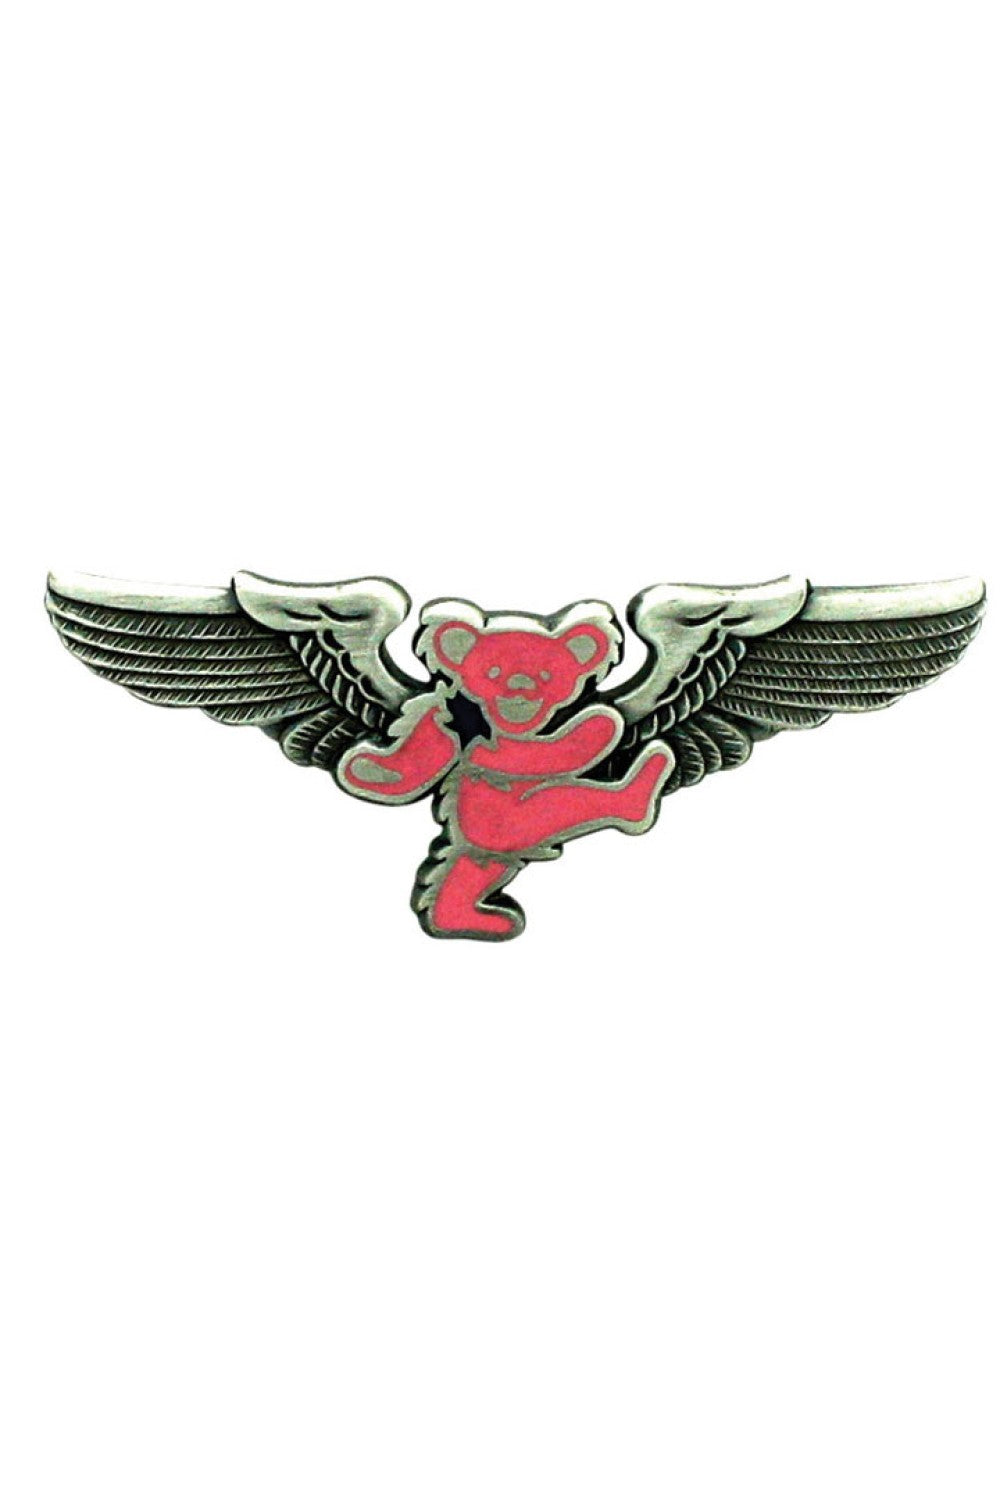 Grateful Dead Pink Bear Pilot Pin Rockwings - eDeadShop